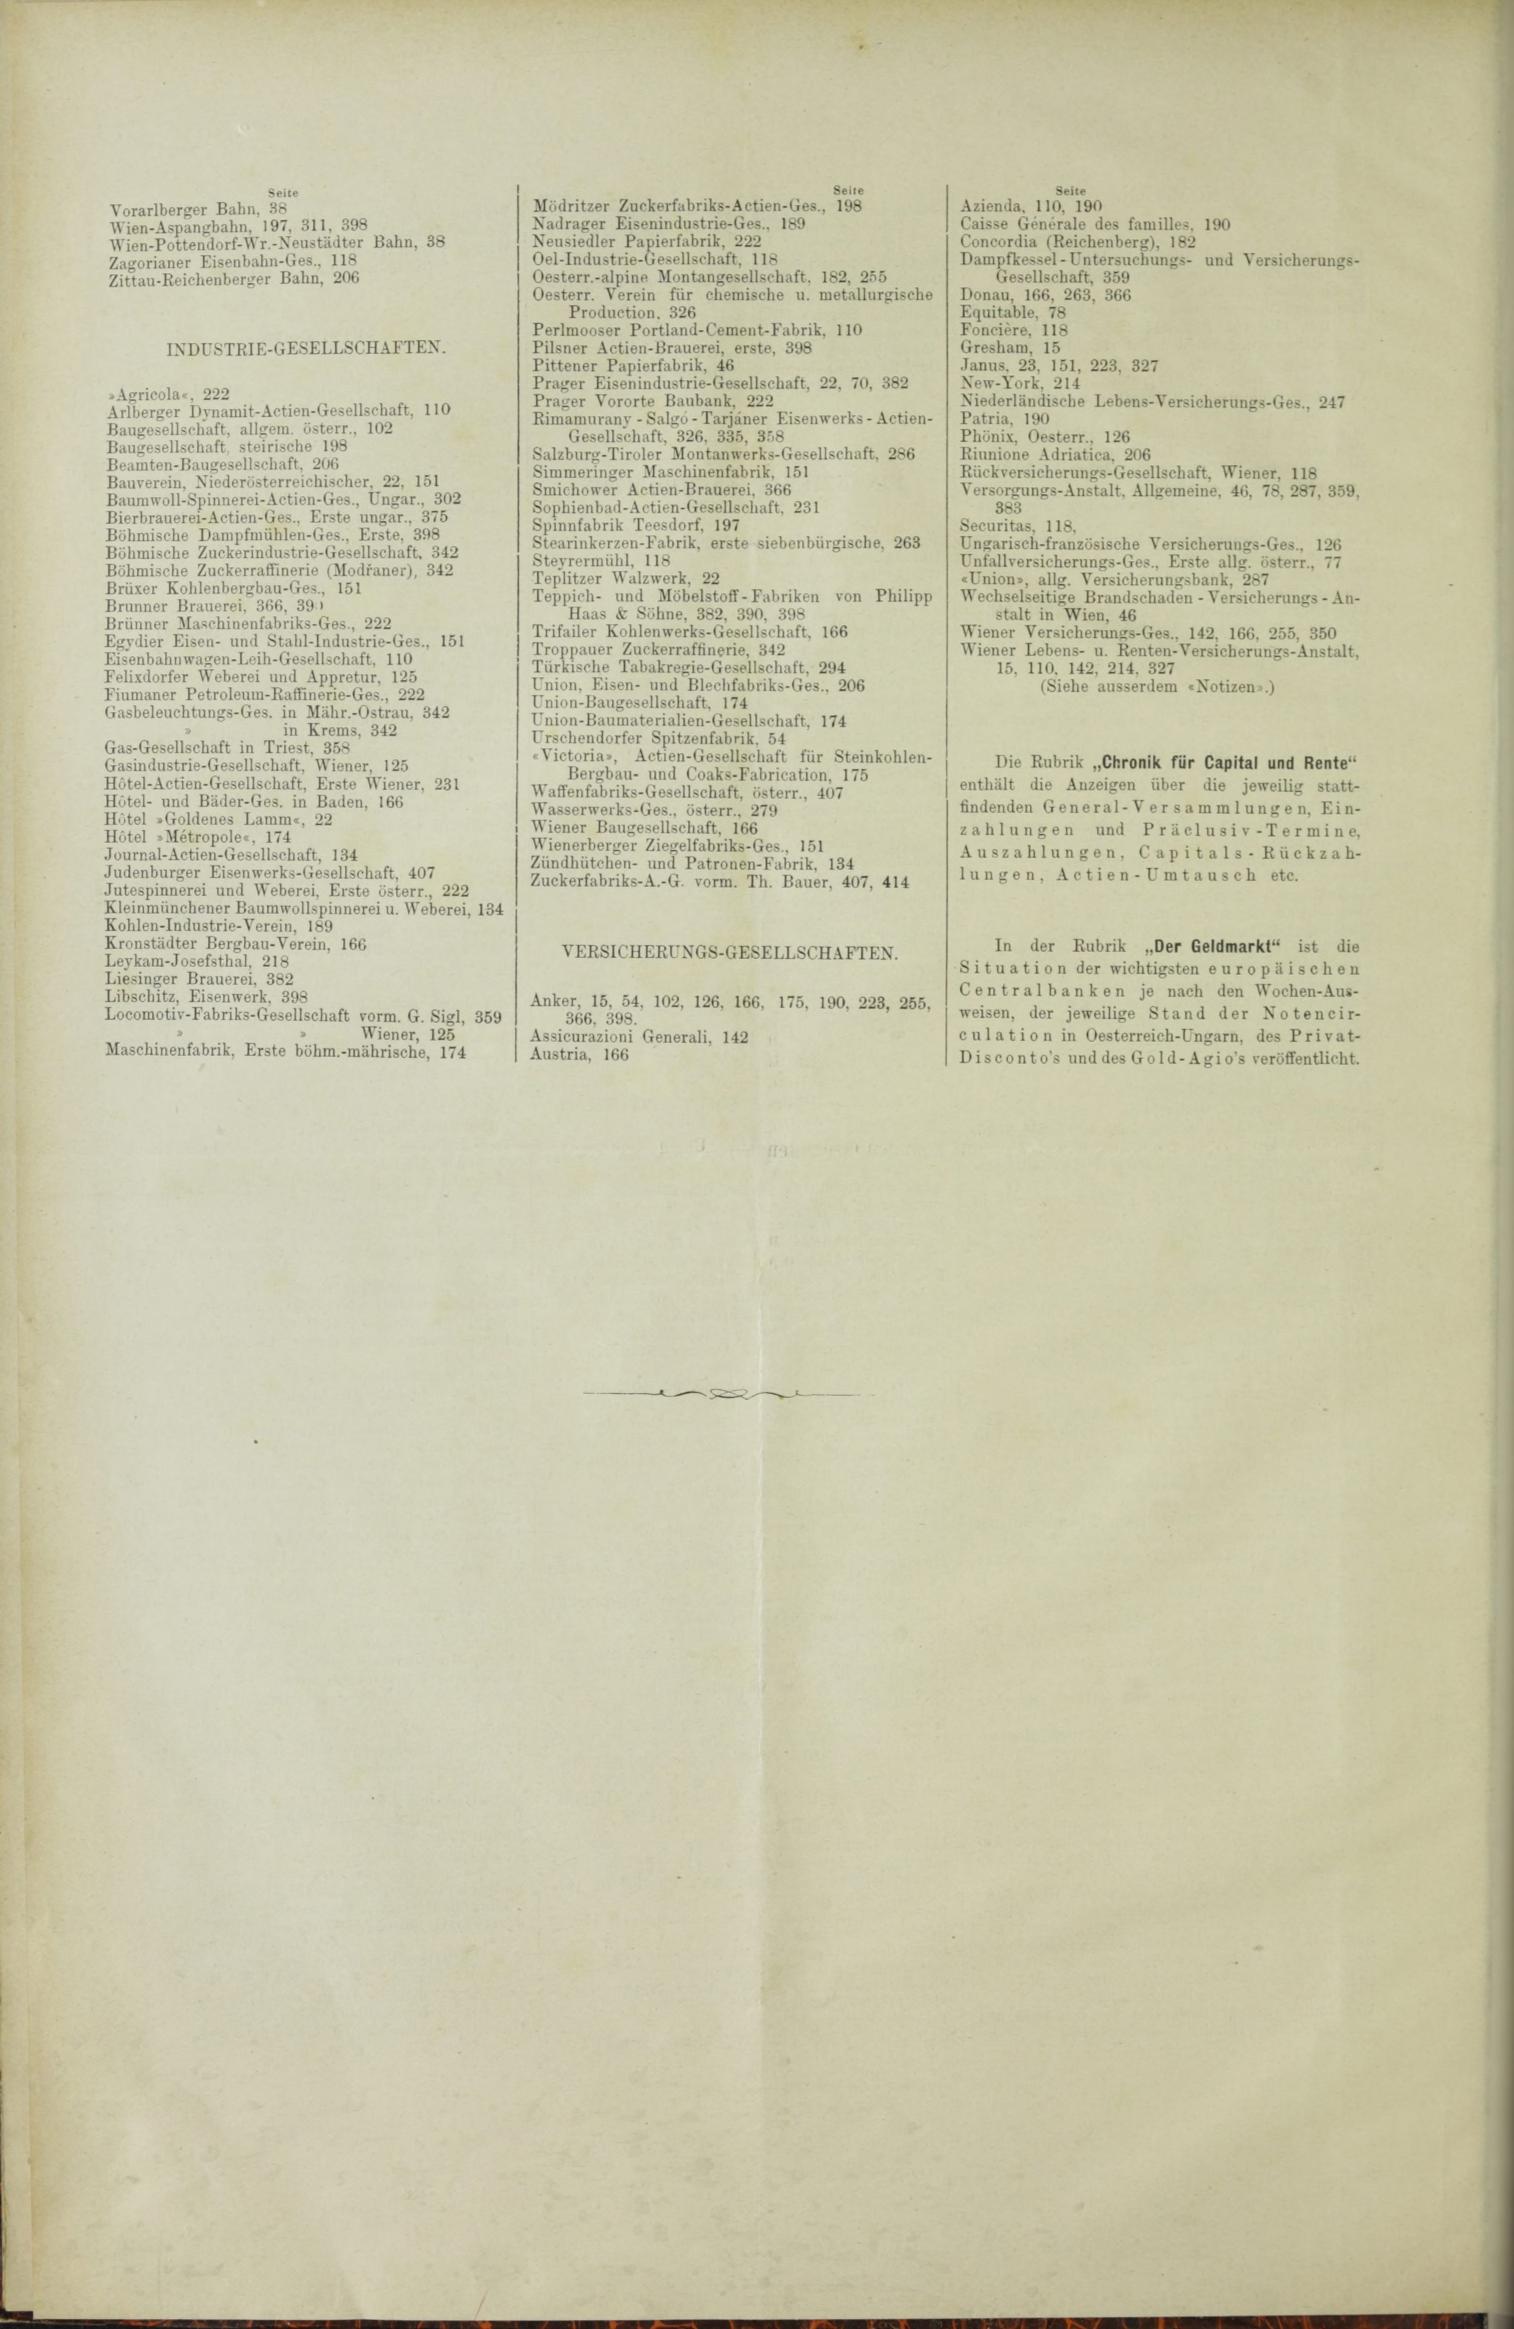 Der Tresor 07.01.1886 - Seite 12